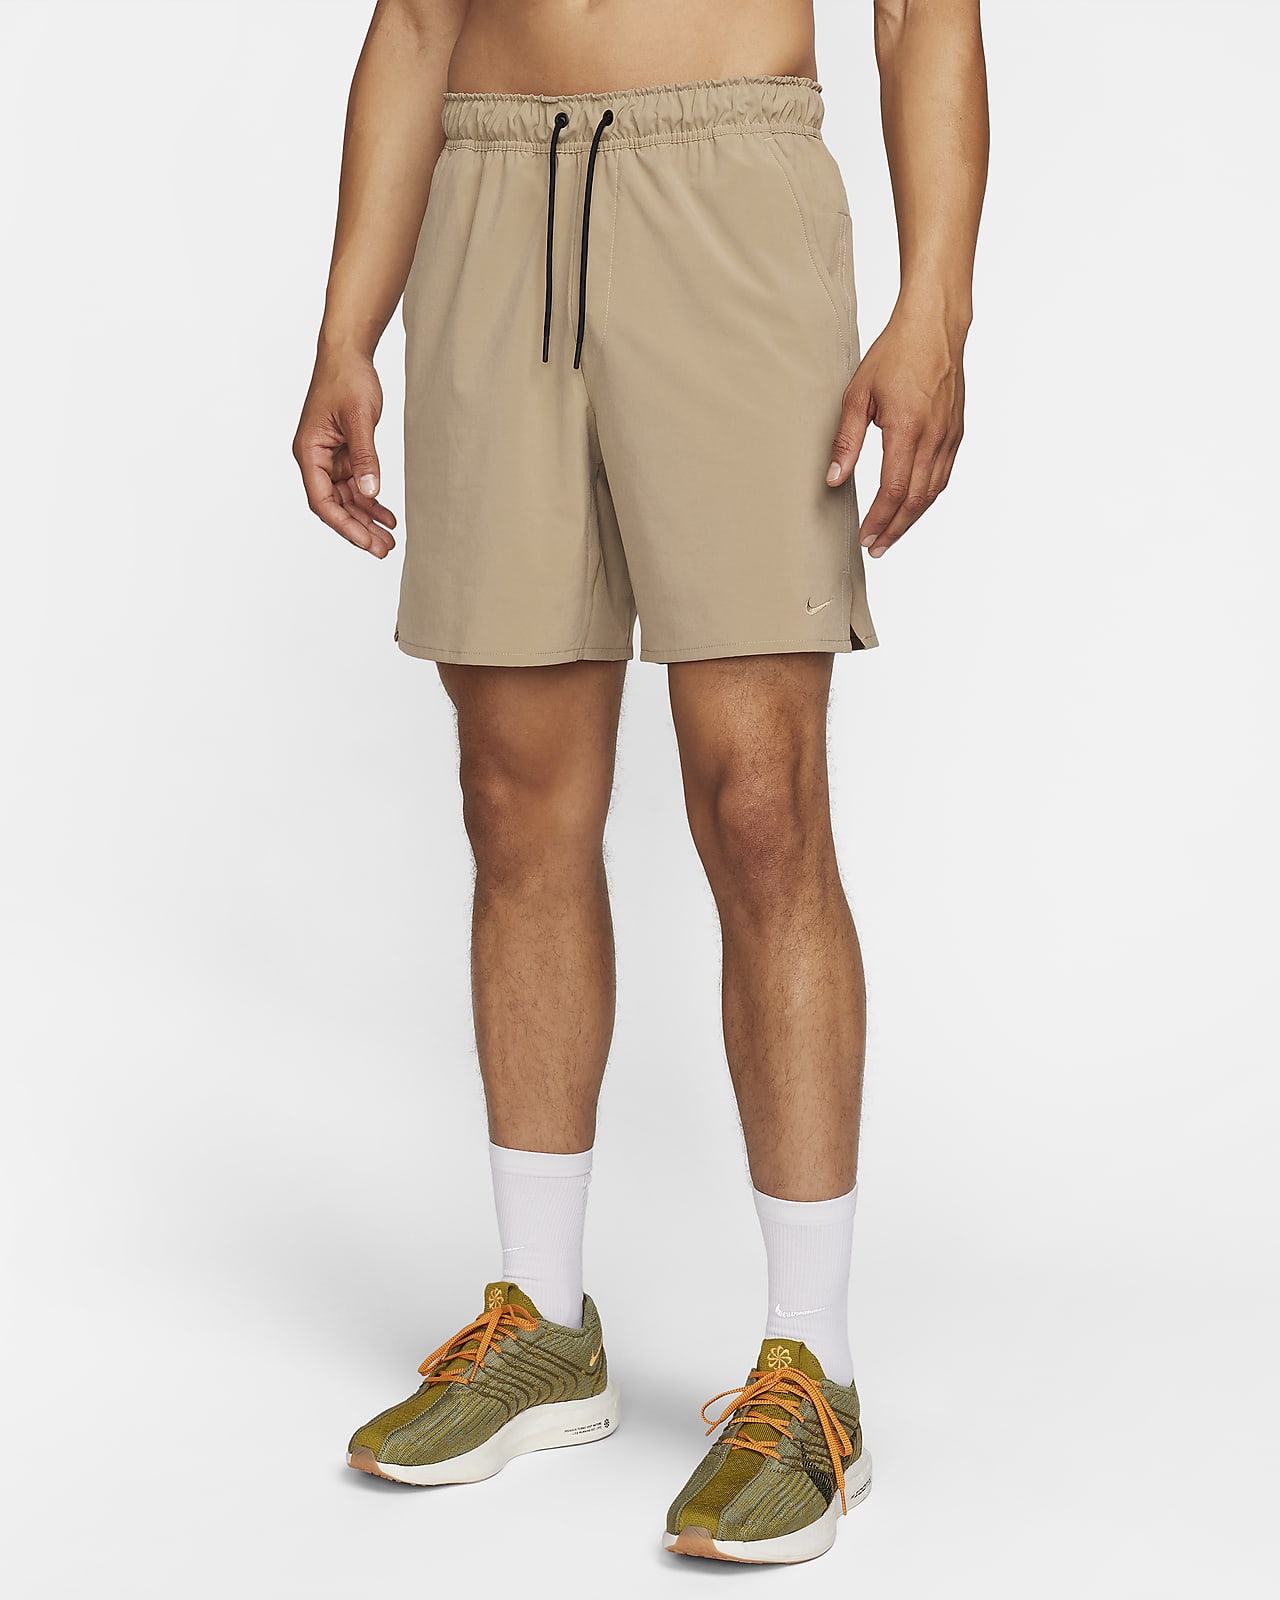 Nike Unlimited Dri-FIT 18 cm-es, bélés nélküli, sokoldalú férfi rövidnadrág